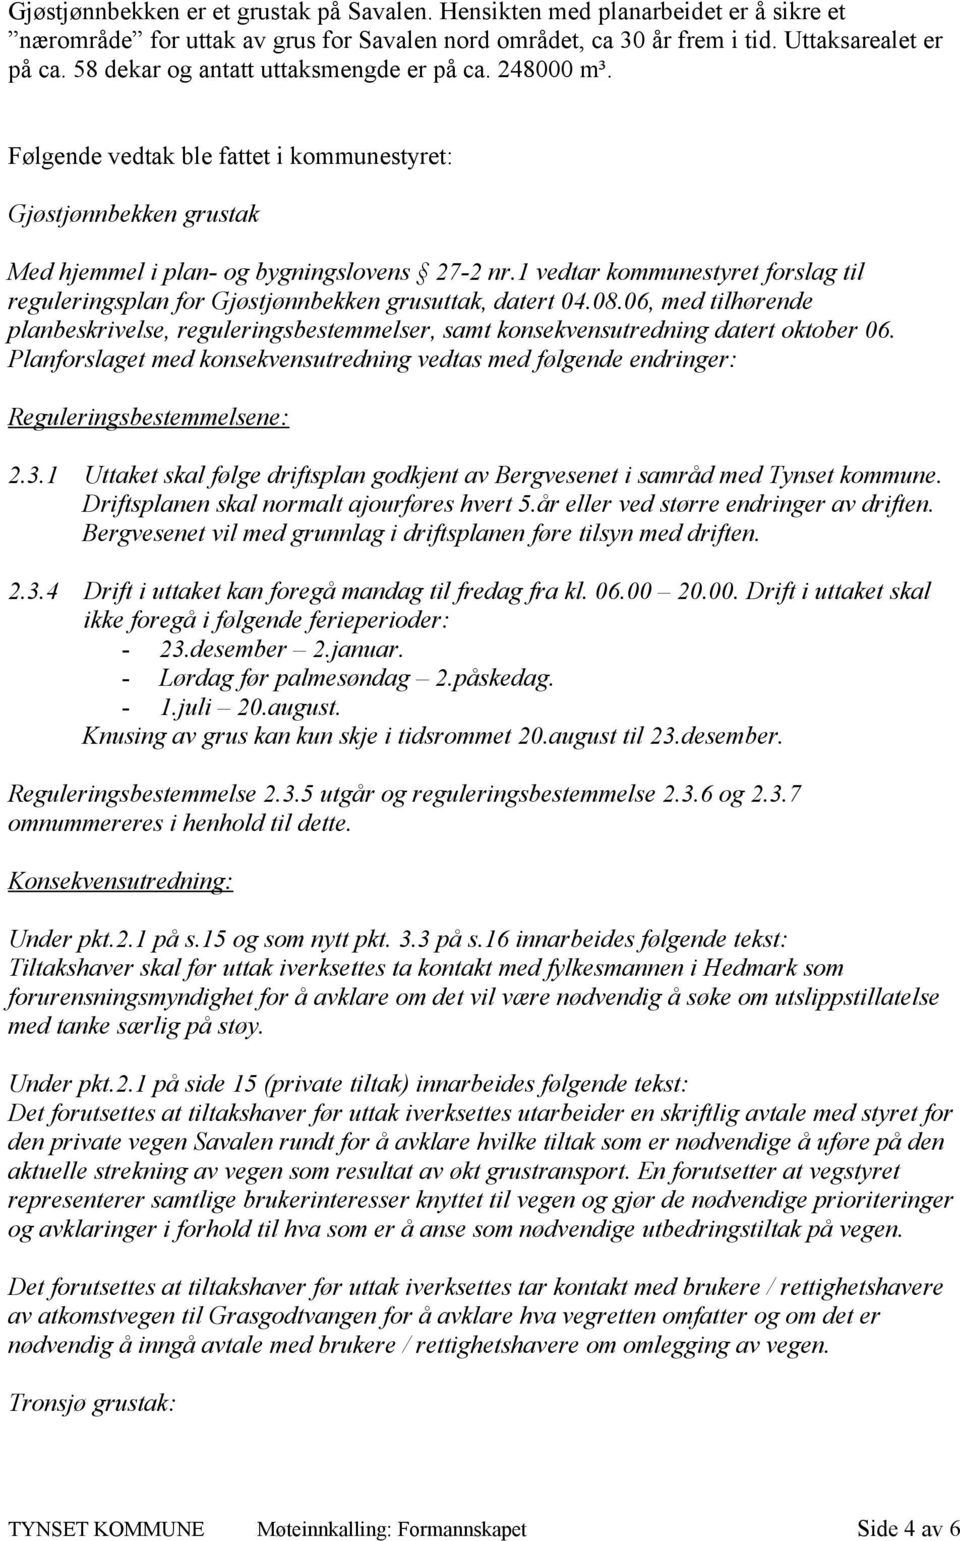 1 vedtar kommunestyret forslag til reguleringsplan for Gjøstjønnbekken grusuttak, datert 04.08.06, med tilhørende planbeskrivelse, reguleringsbestemmelser, samt konsekvensutredning datert oktober 06.